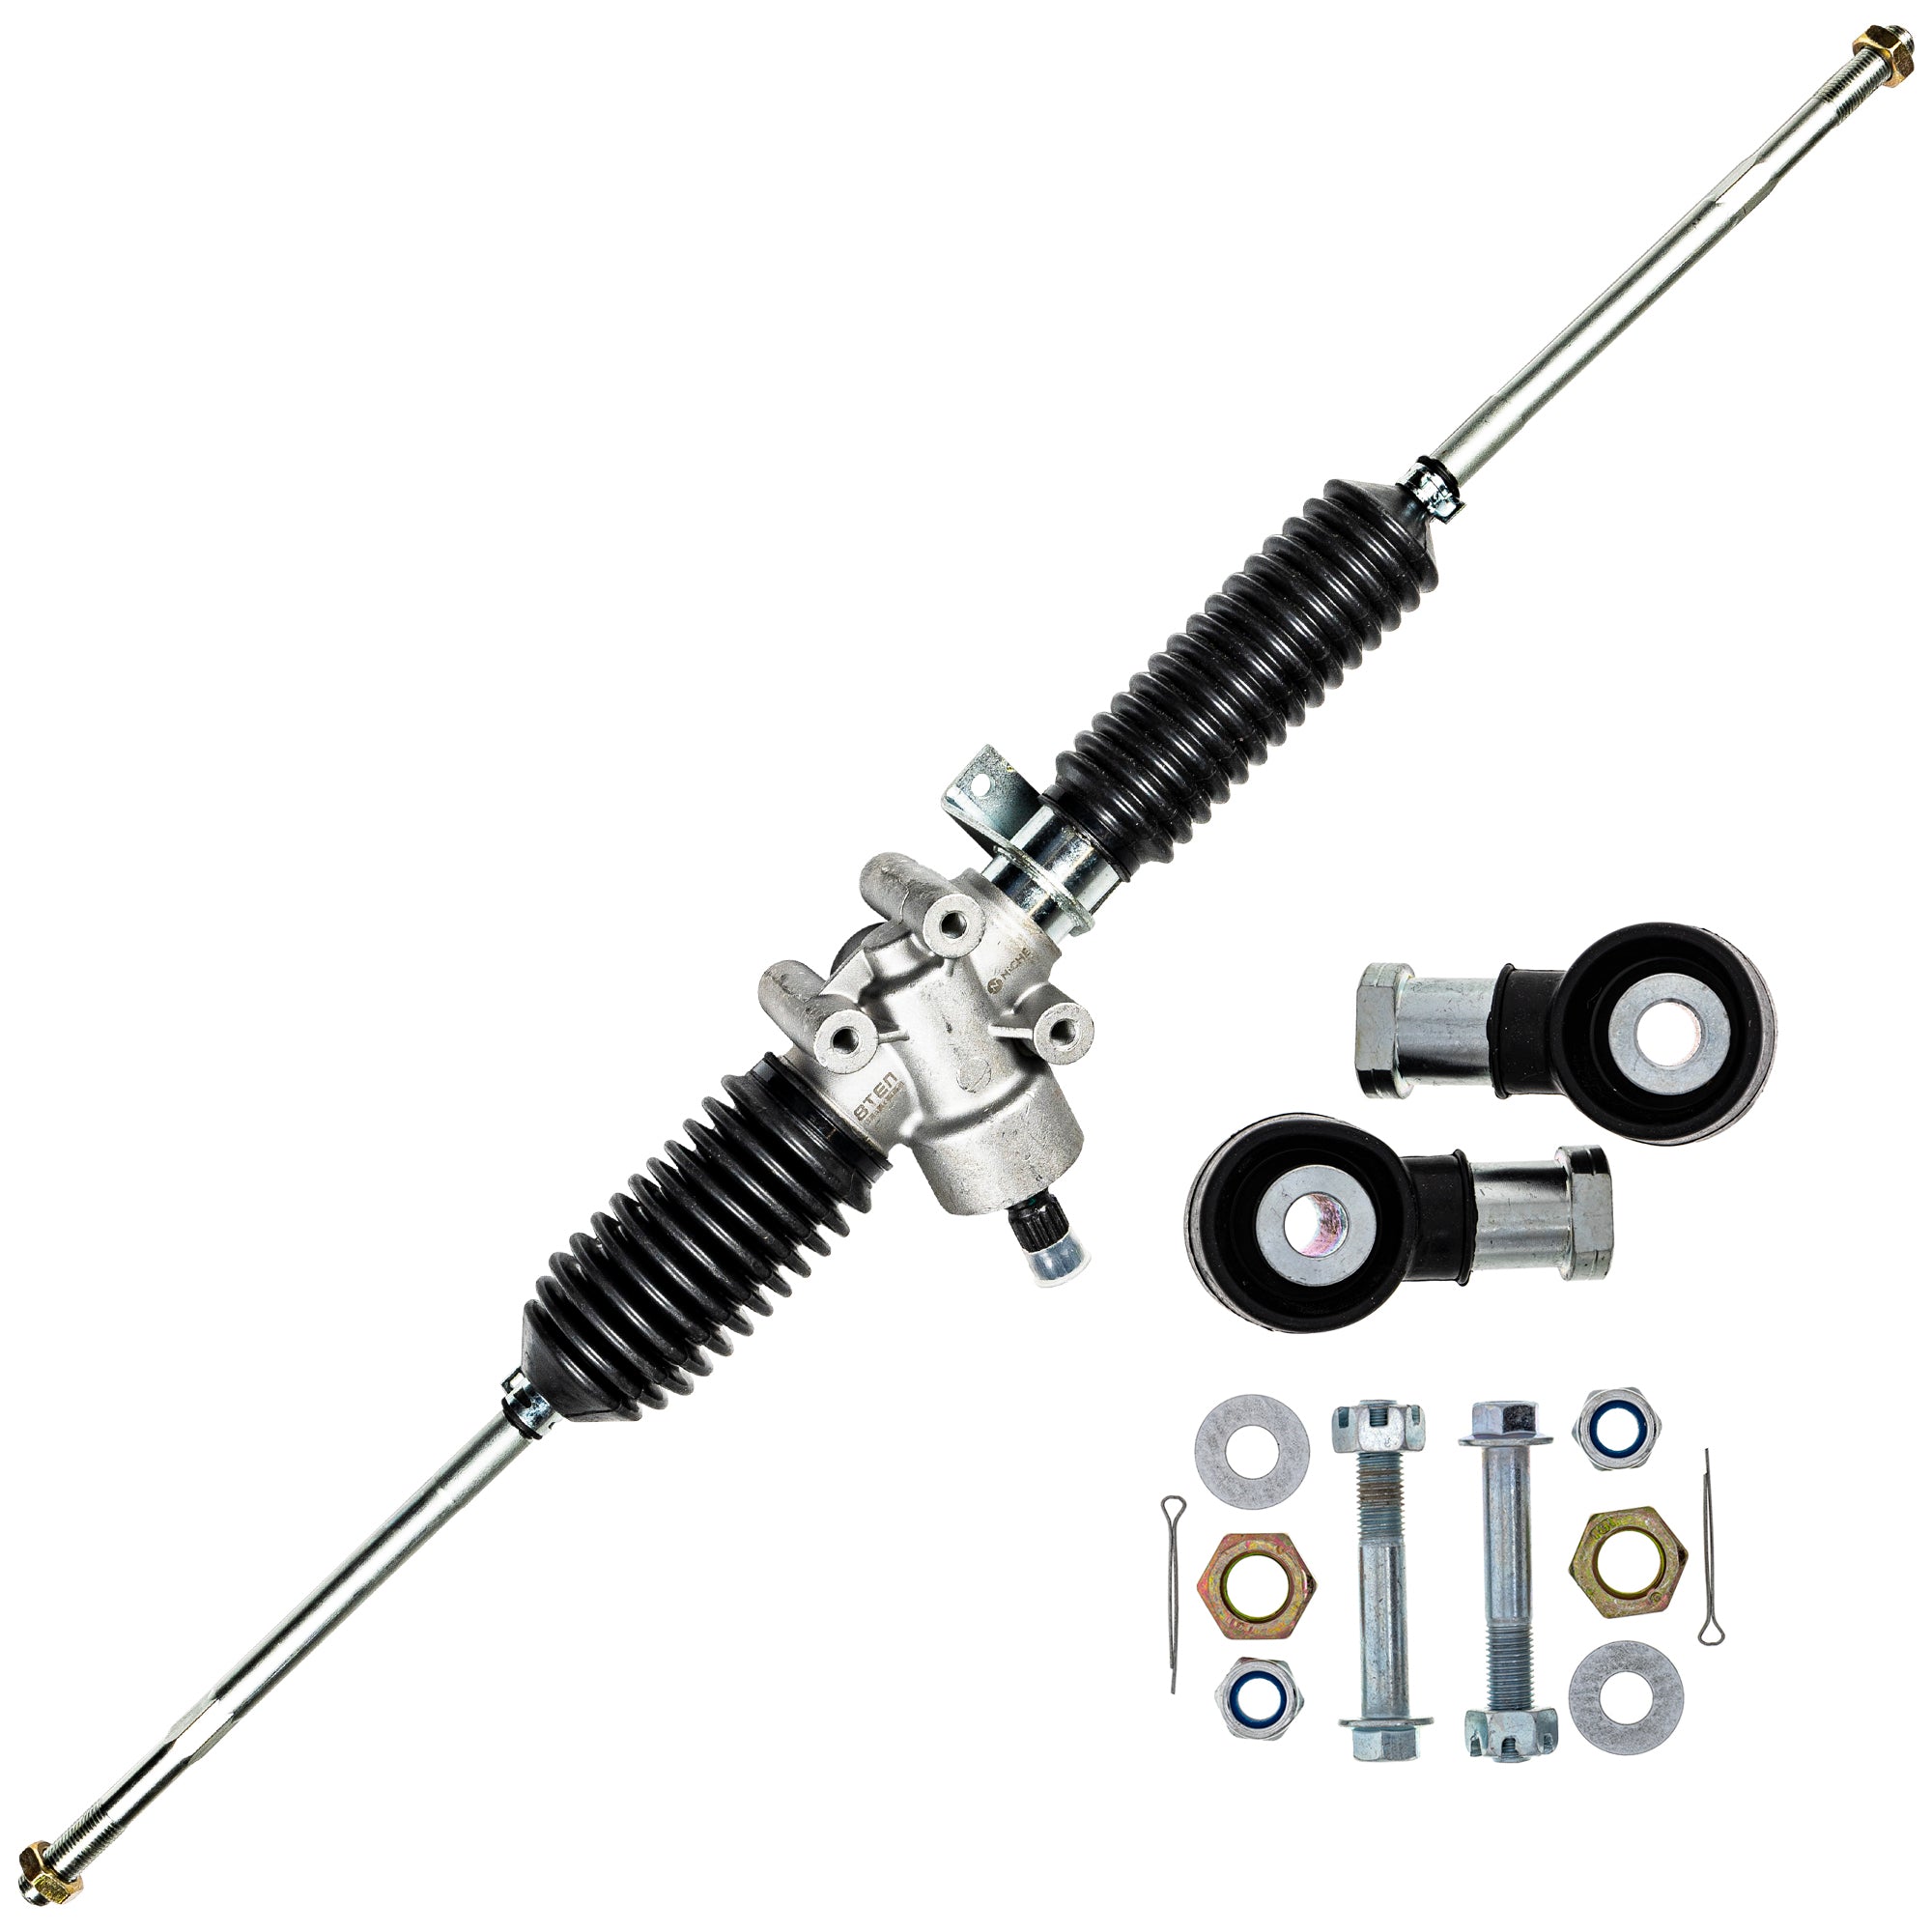 Steering Rack Assembly & Tie Rods Kit for Polaris Ranger NICHE MK1009497